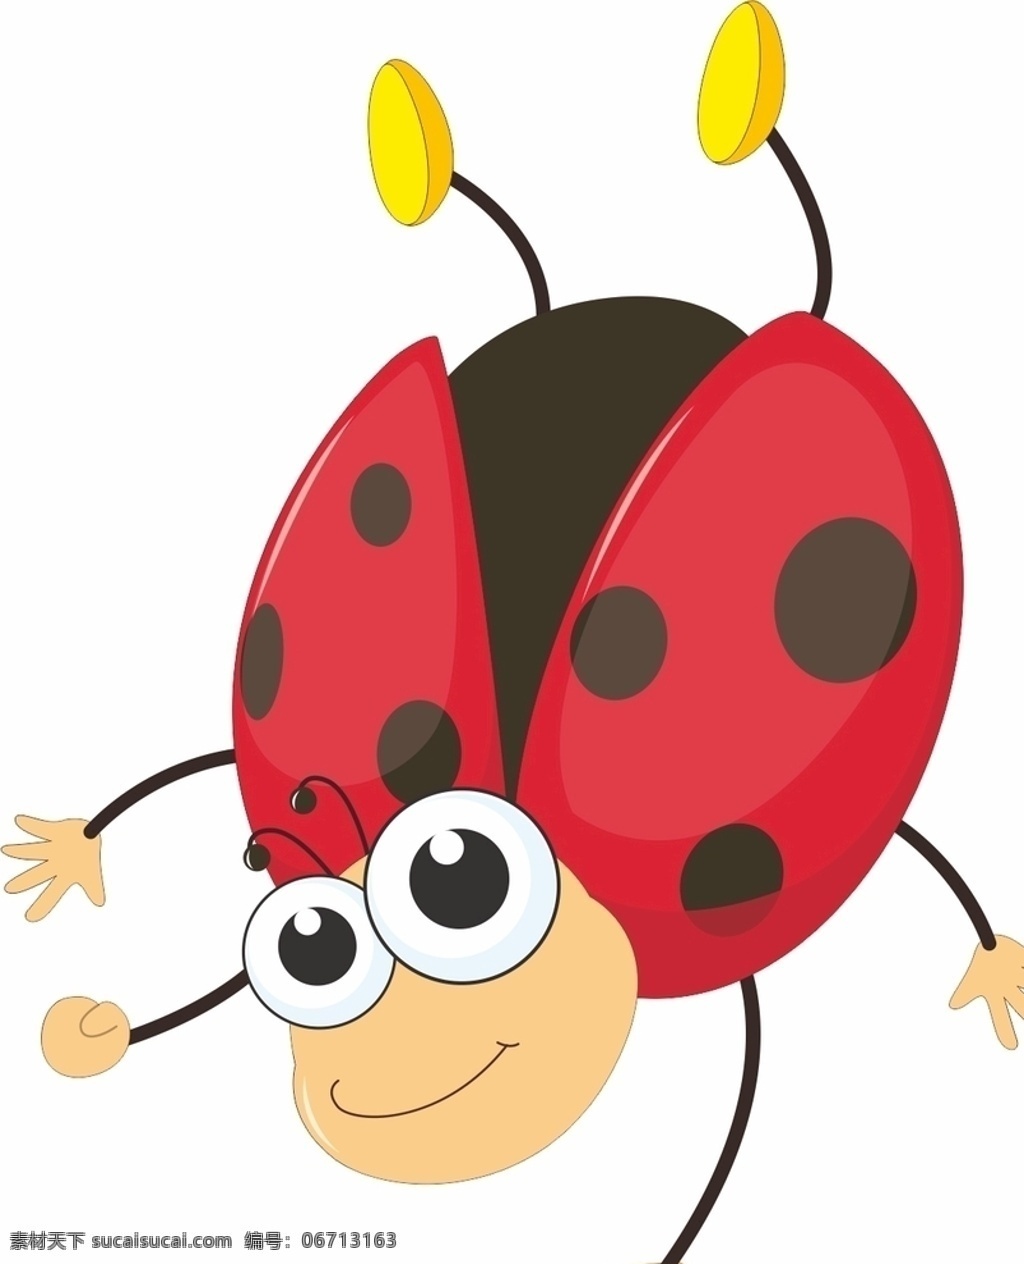 瓢虫图片 瓢虫 虫 可爱 卡通瓢虫 漫画瓢虫 卡通 漫画昆虫 卡通昆虫 矢量素材 矢量 矢量素材动物